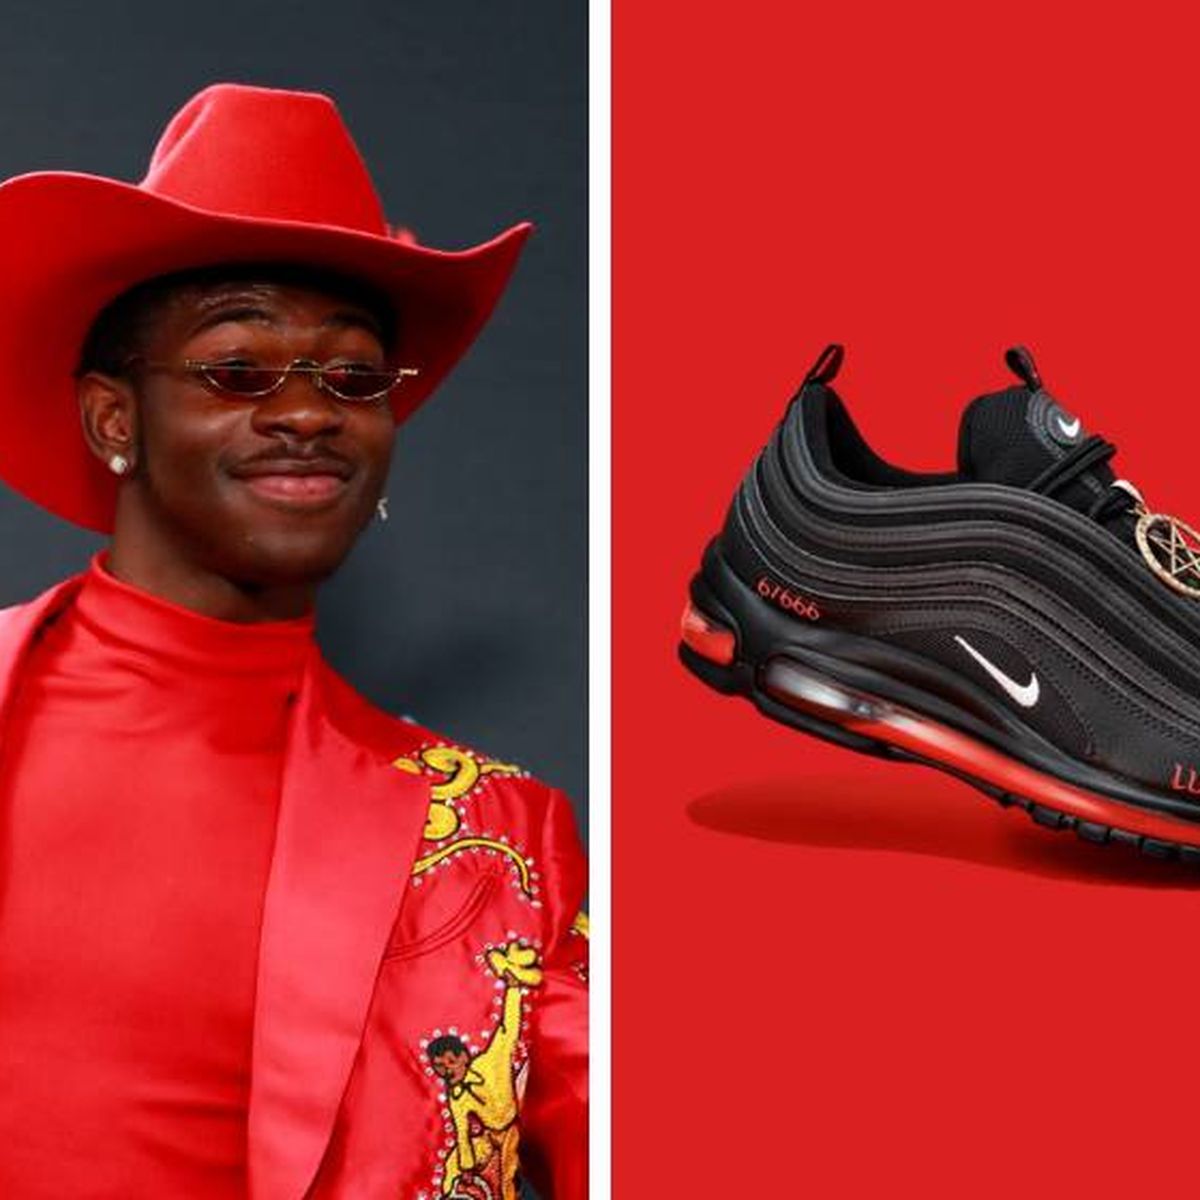 El rapero Lil Nas X y zapatillas sangre humana: "Nike respalda este diseño"